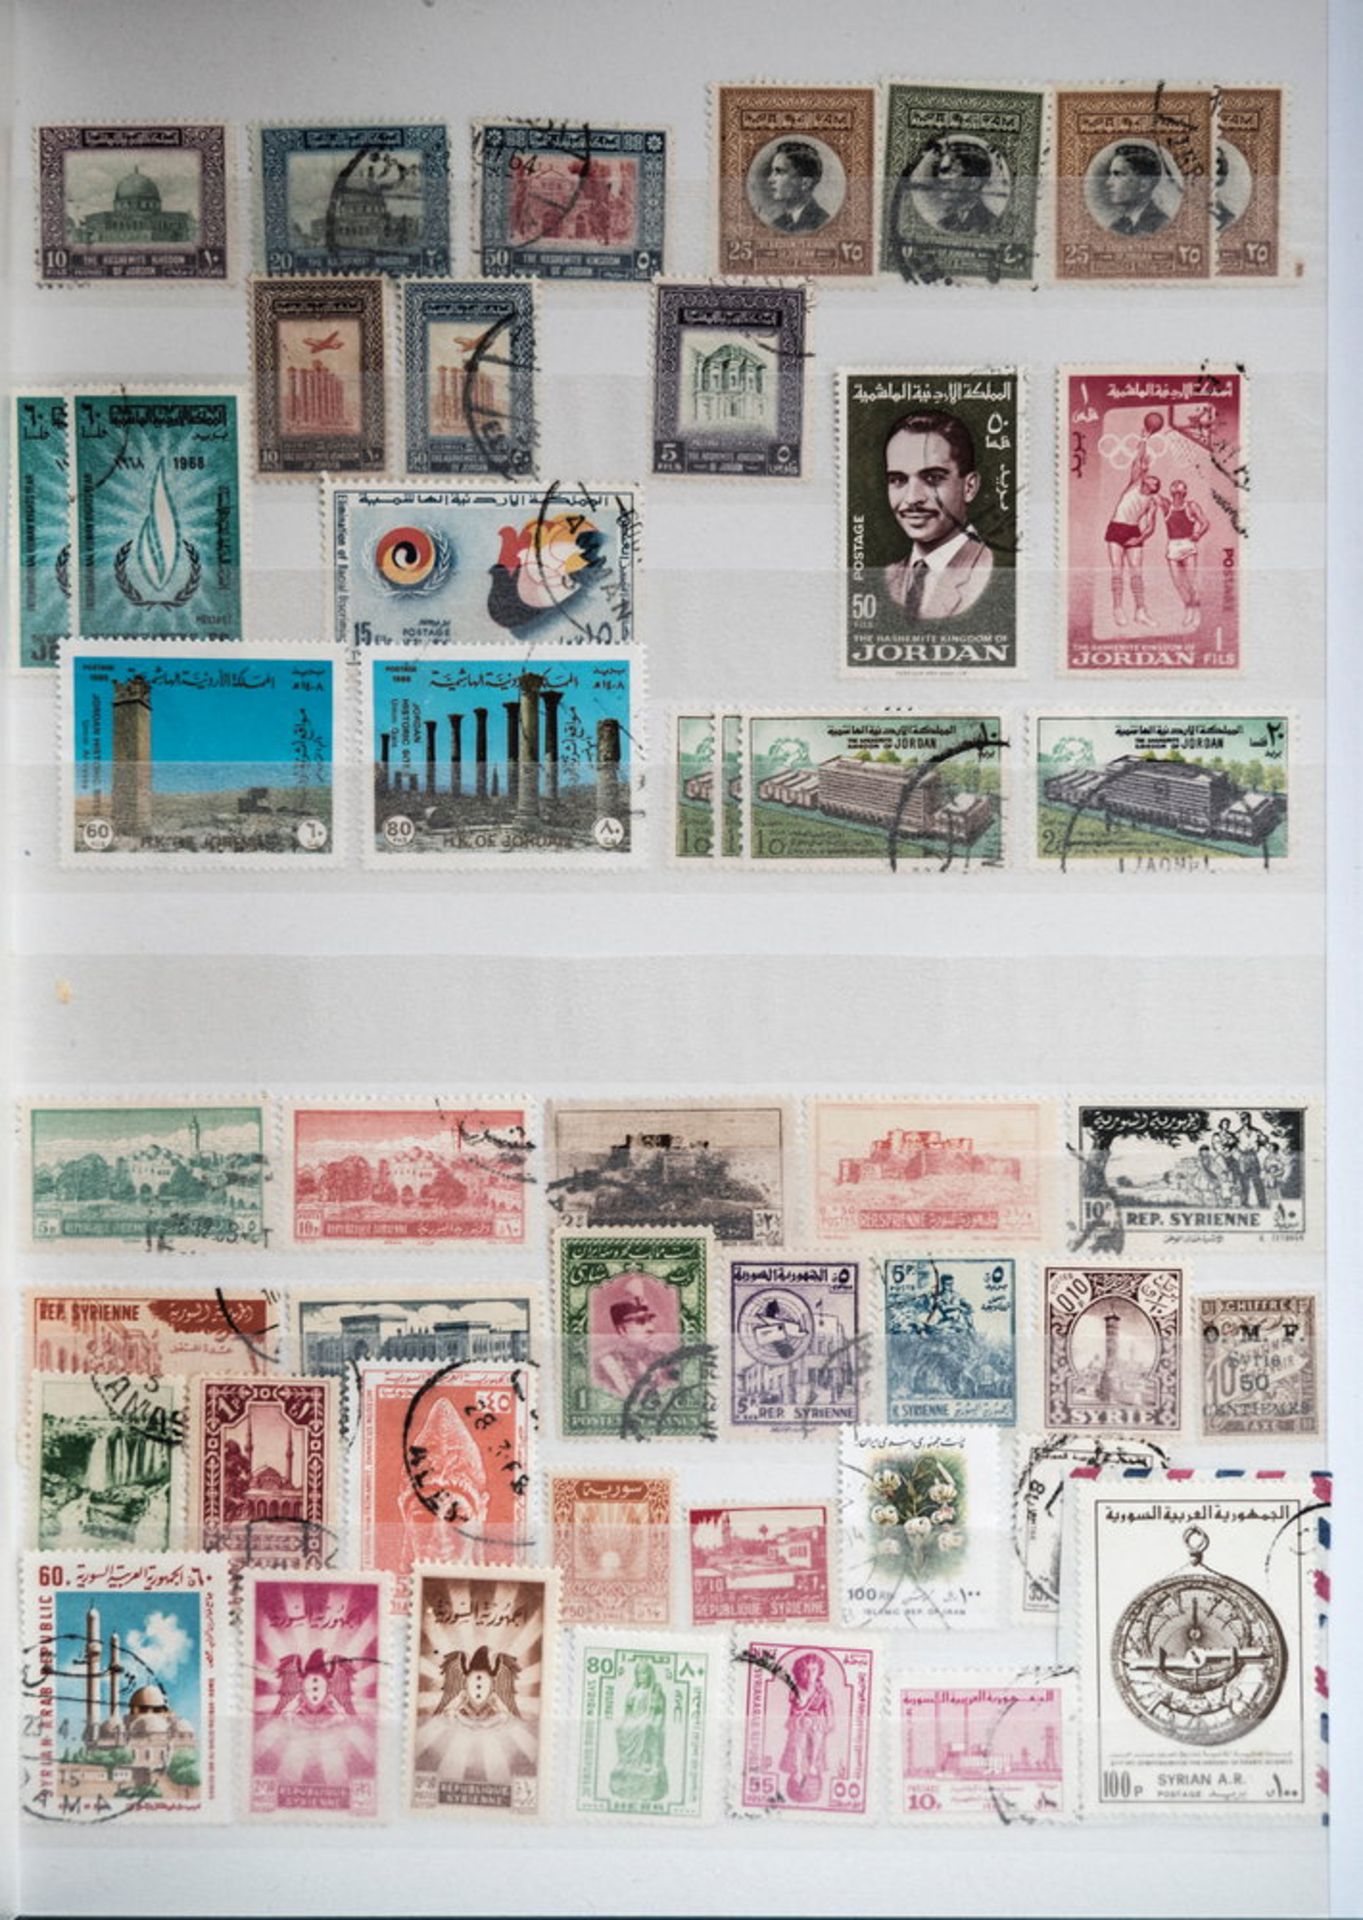 Sammlung Arabien und Vorderasien/Israel. Dazu drei Briefmarken - Steckkarten Ägypten.>/de> - Bild 5 aus 7